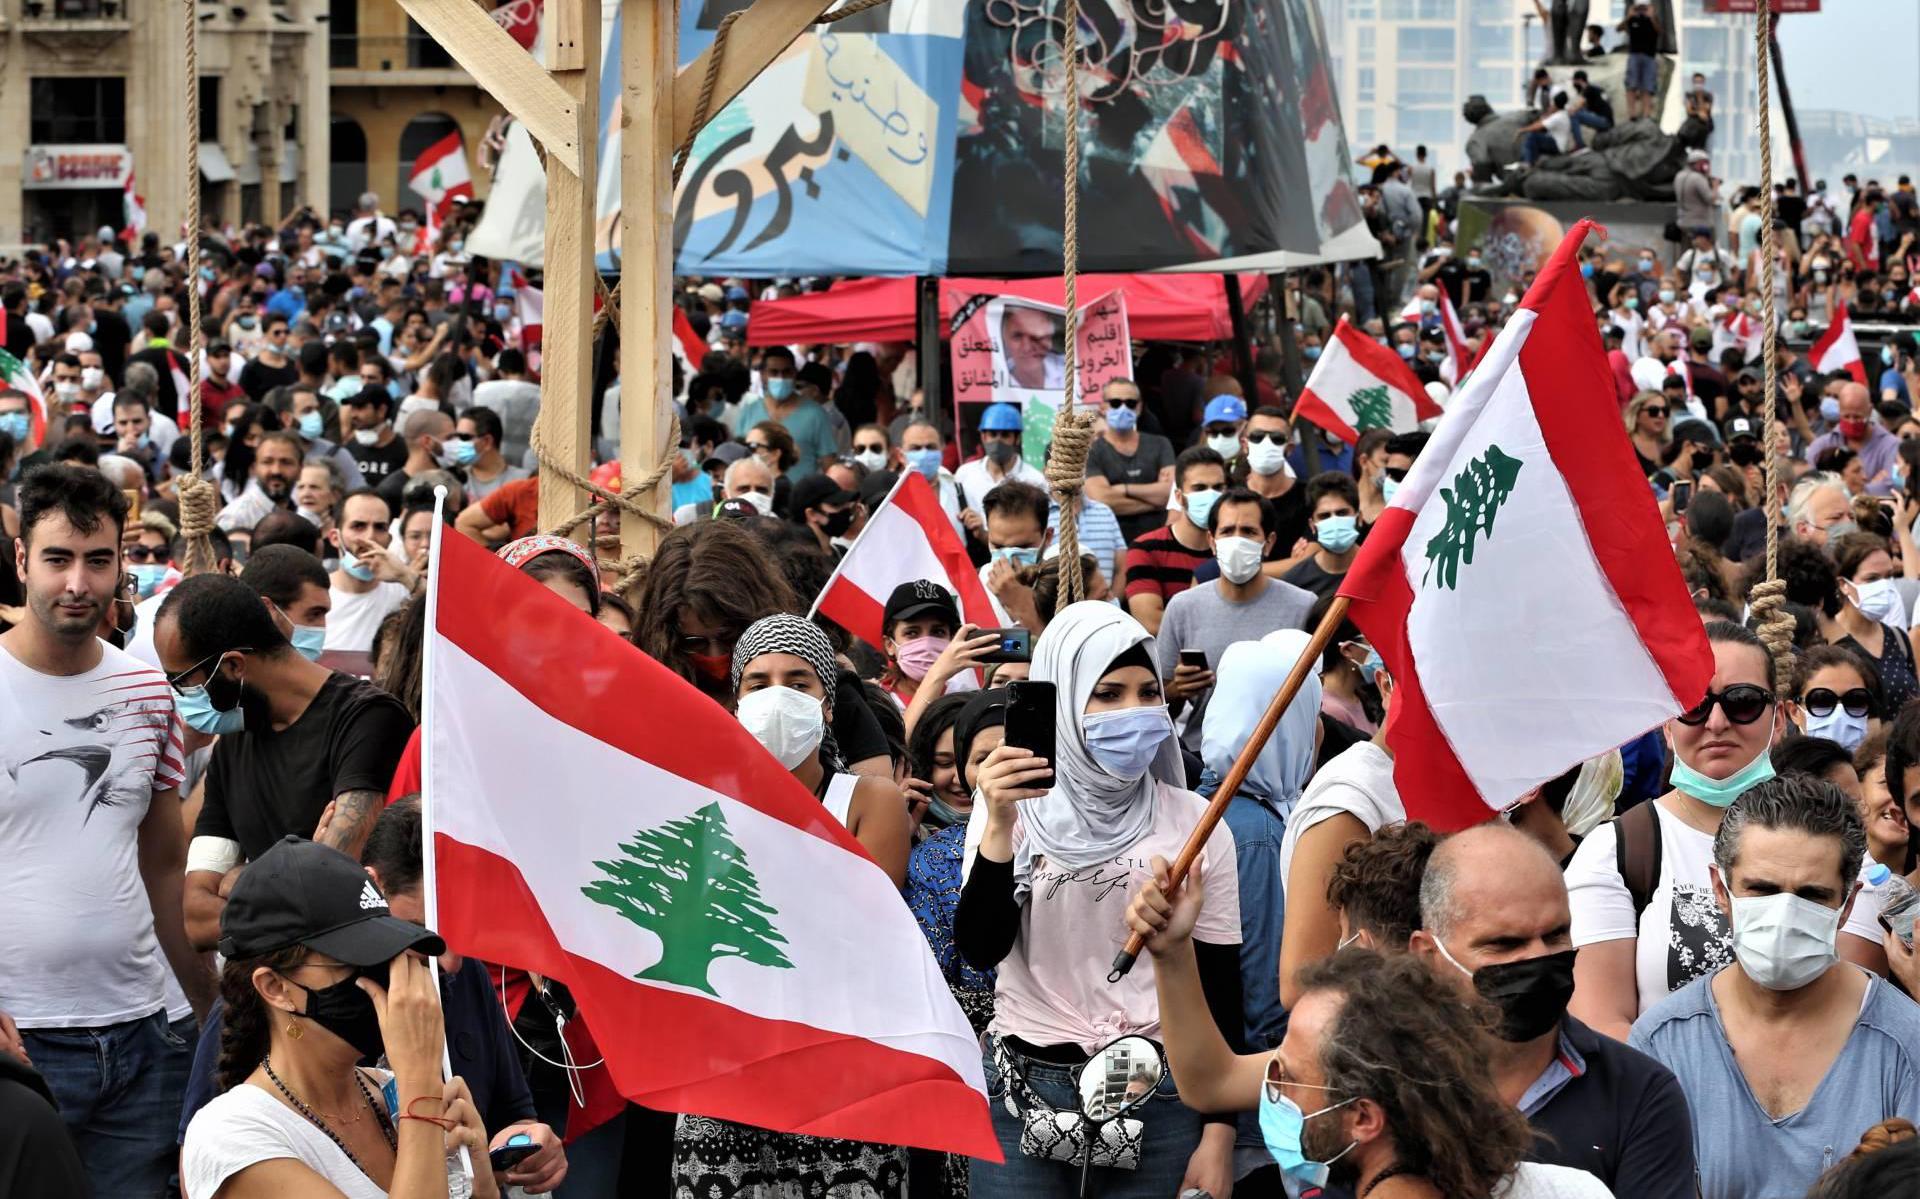 Legertroepen zetten betogers uit buitenlandministerie Beiroet